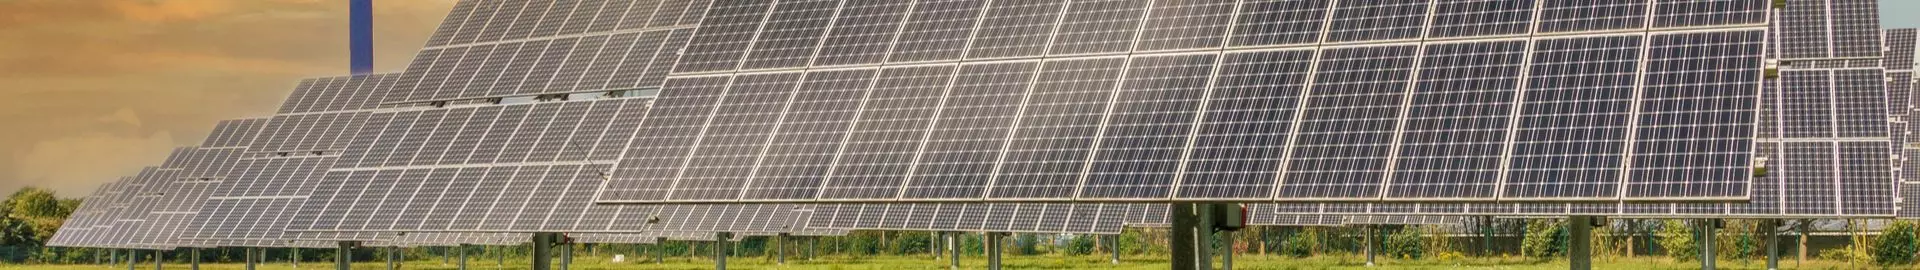 Next-generation Organic Solar Cell Market